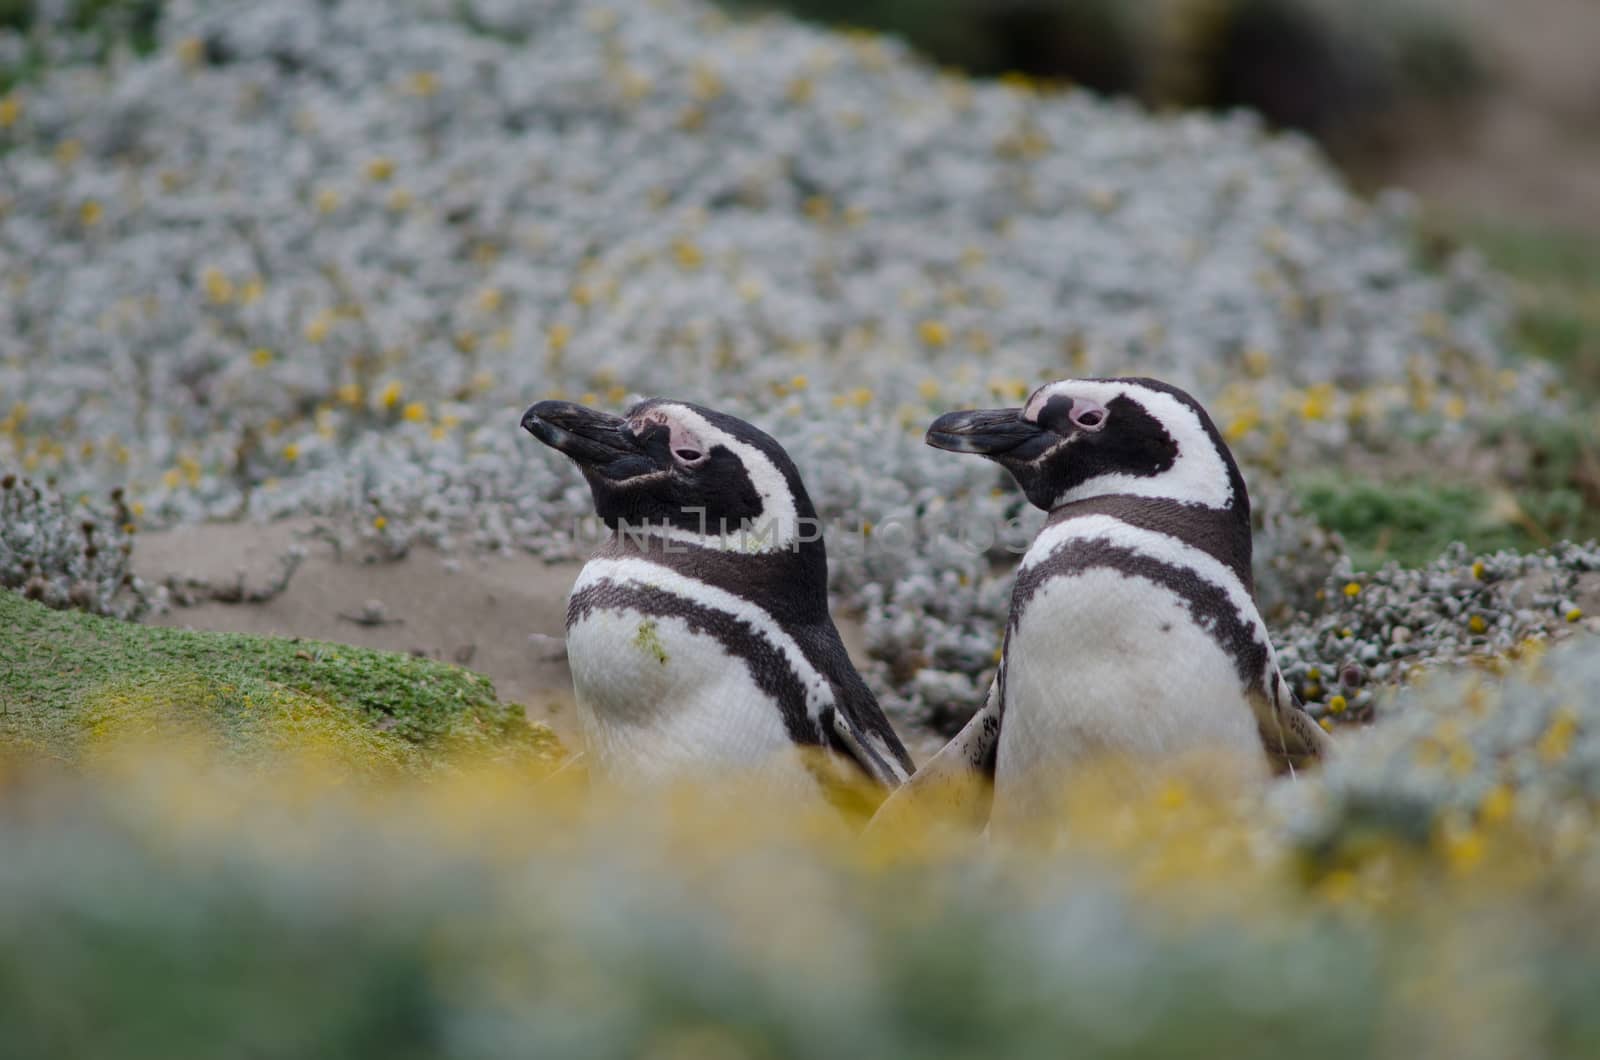 Magellanic penguins Spheniscus magellanicus in the Otway Sound and Penguin Reserve. by VictorSuarez